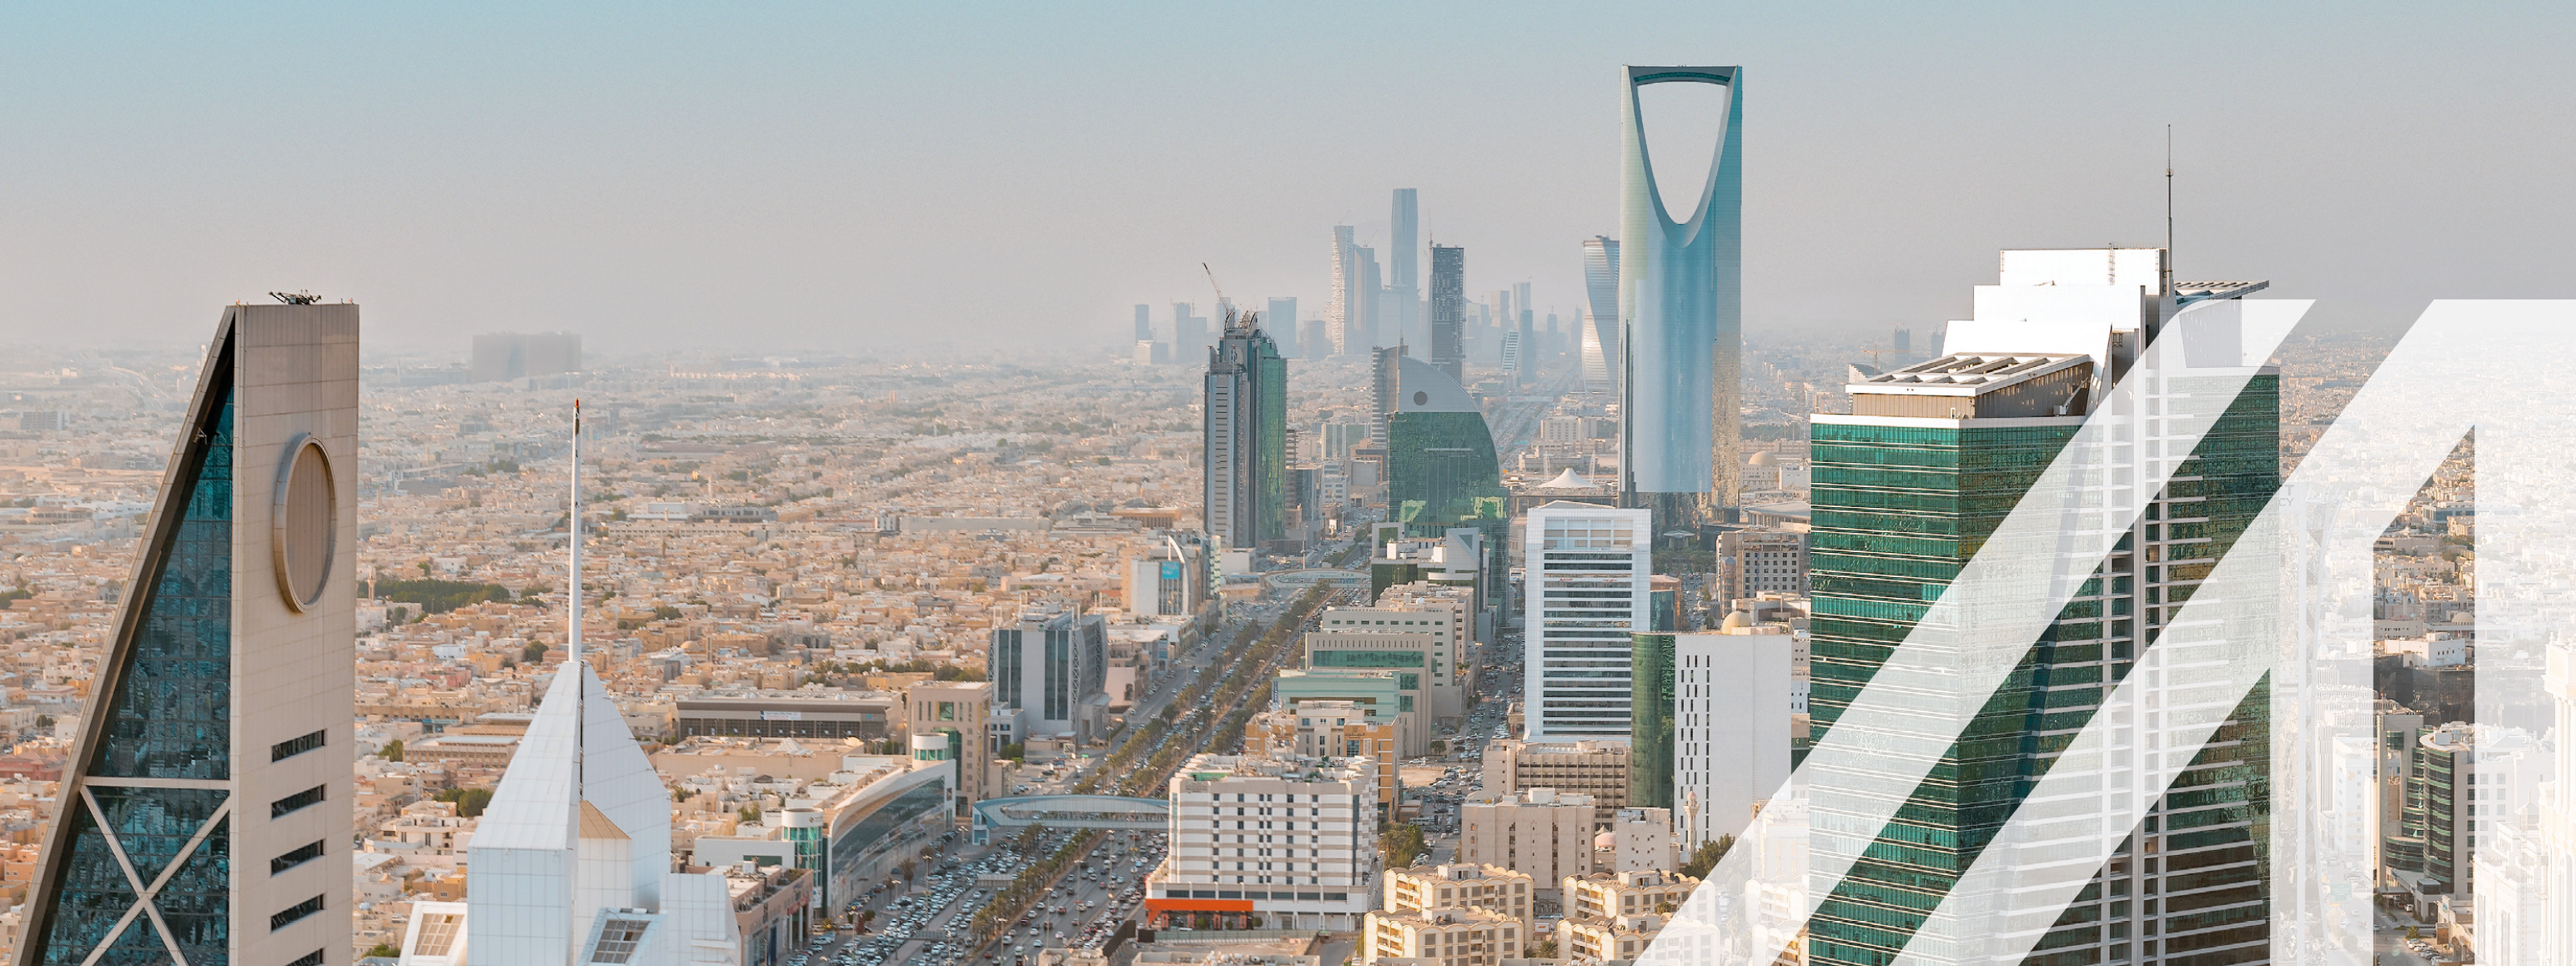 Blick auf die Skyline von Saudi Arabiens Hauptstadt Riyadh mit seinen modernen Wolkenkratzern und einer belebten Straße.